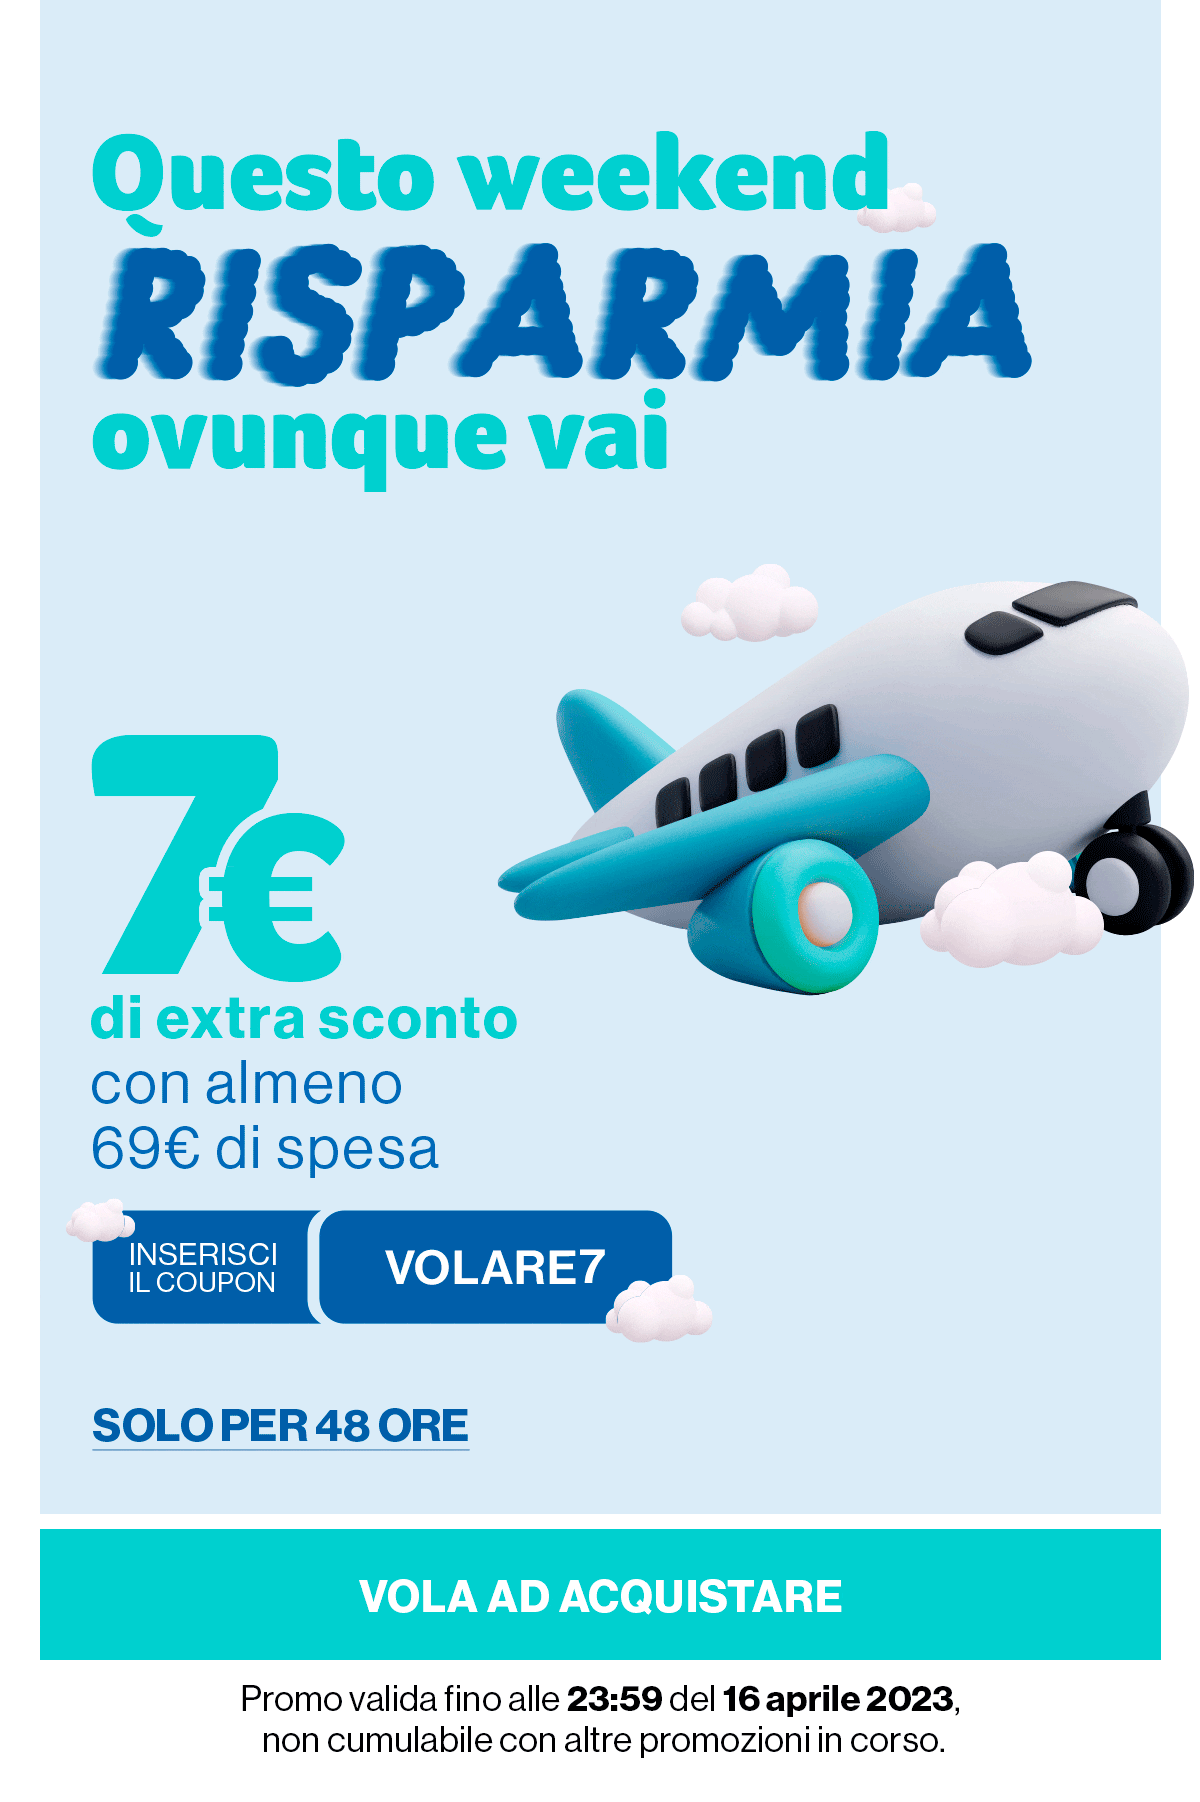 7€ di extra sconto ogni 69€ di spesa codice: VOLARE7